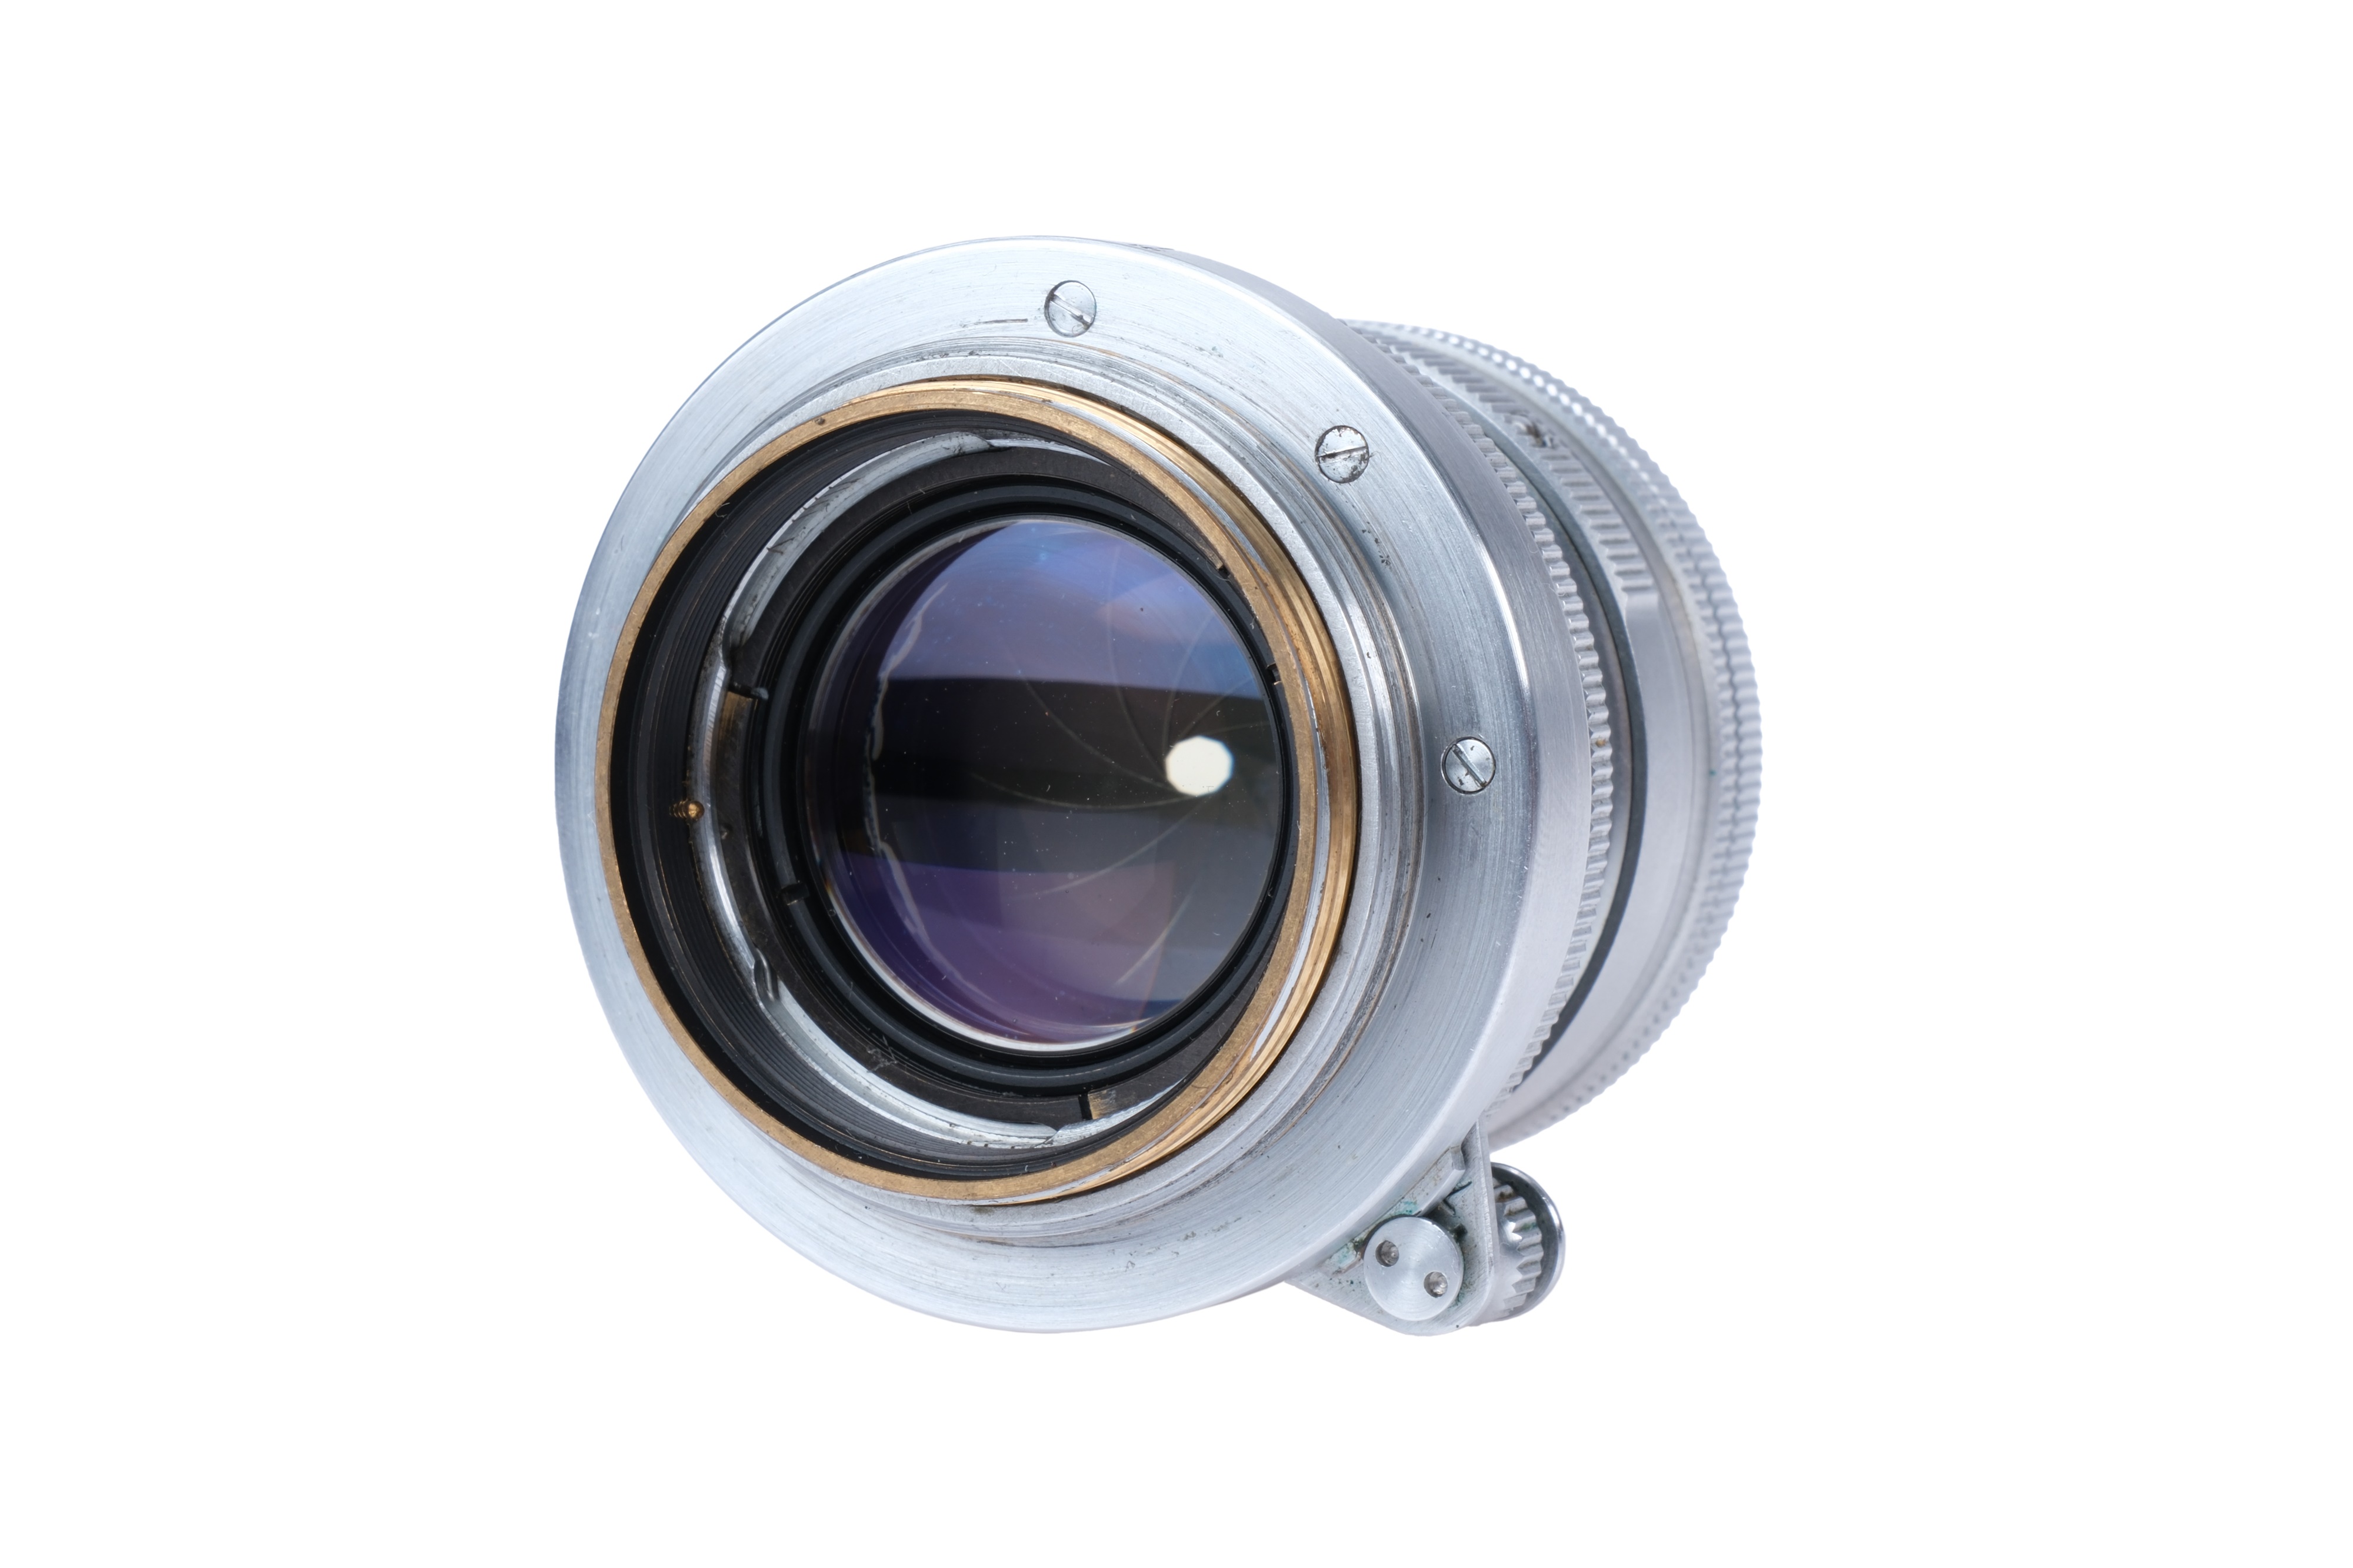 A Leitz Summicron 'Thorium' f/2 50mm Lens, - Image 3 of 3